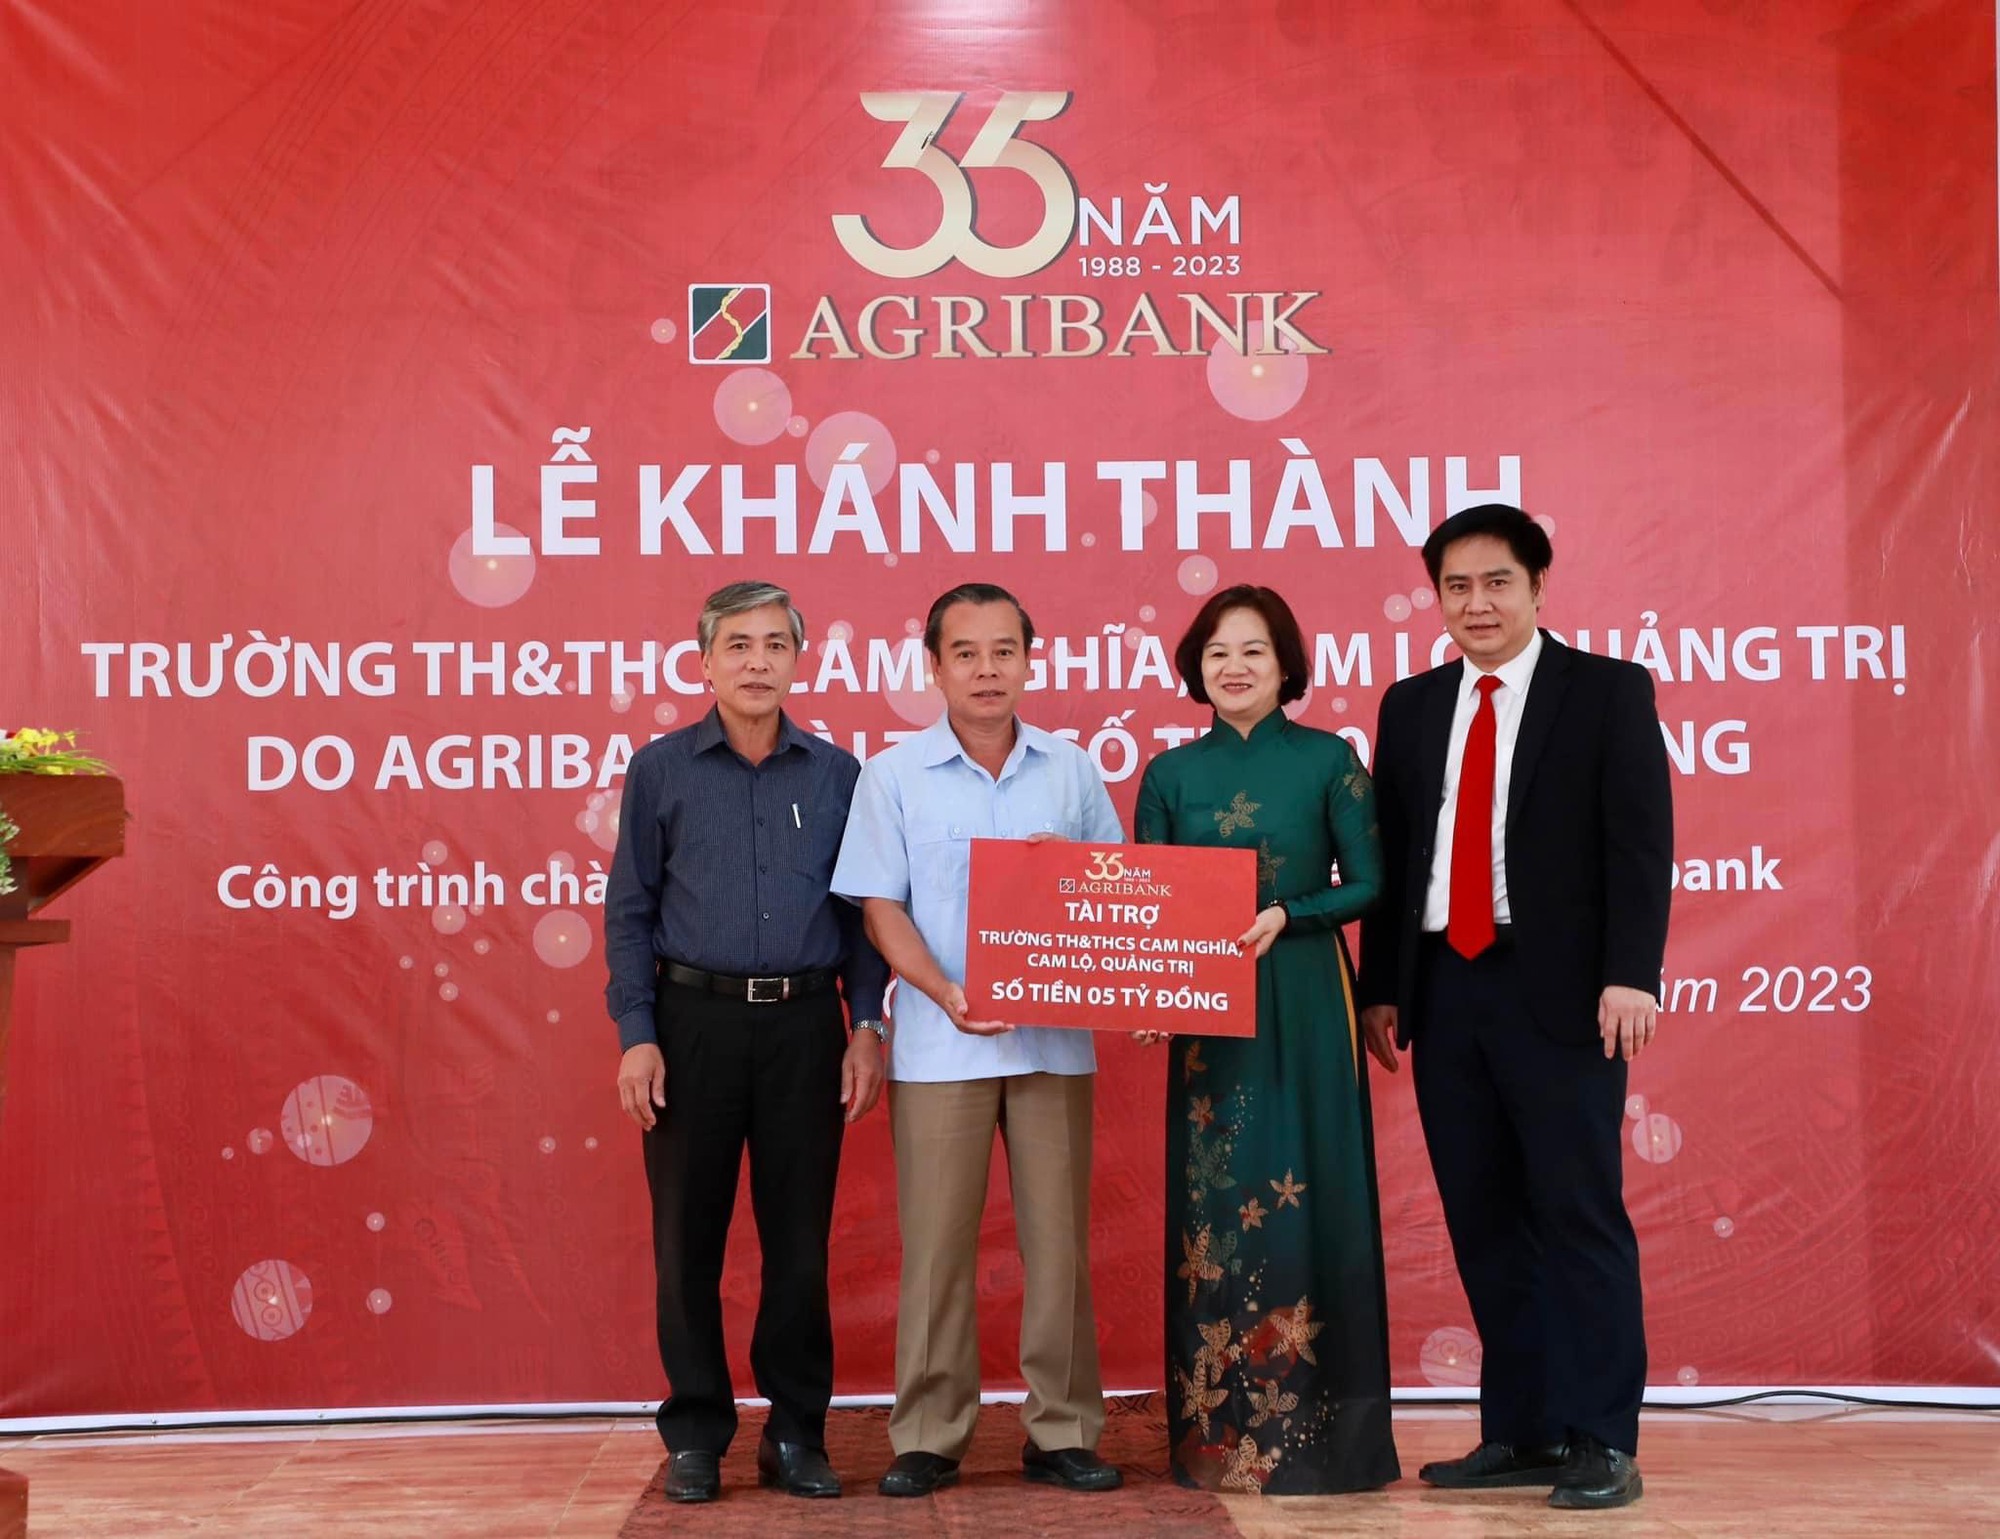 Dấu ấn Agribank trong xây dựng nông thôn mới tại Quảng Trị - Ảnh 5.